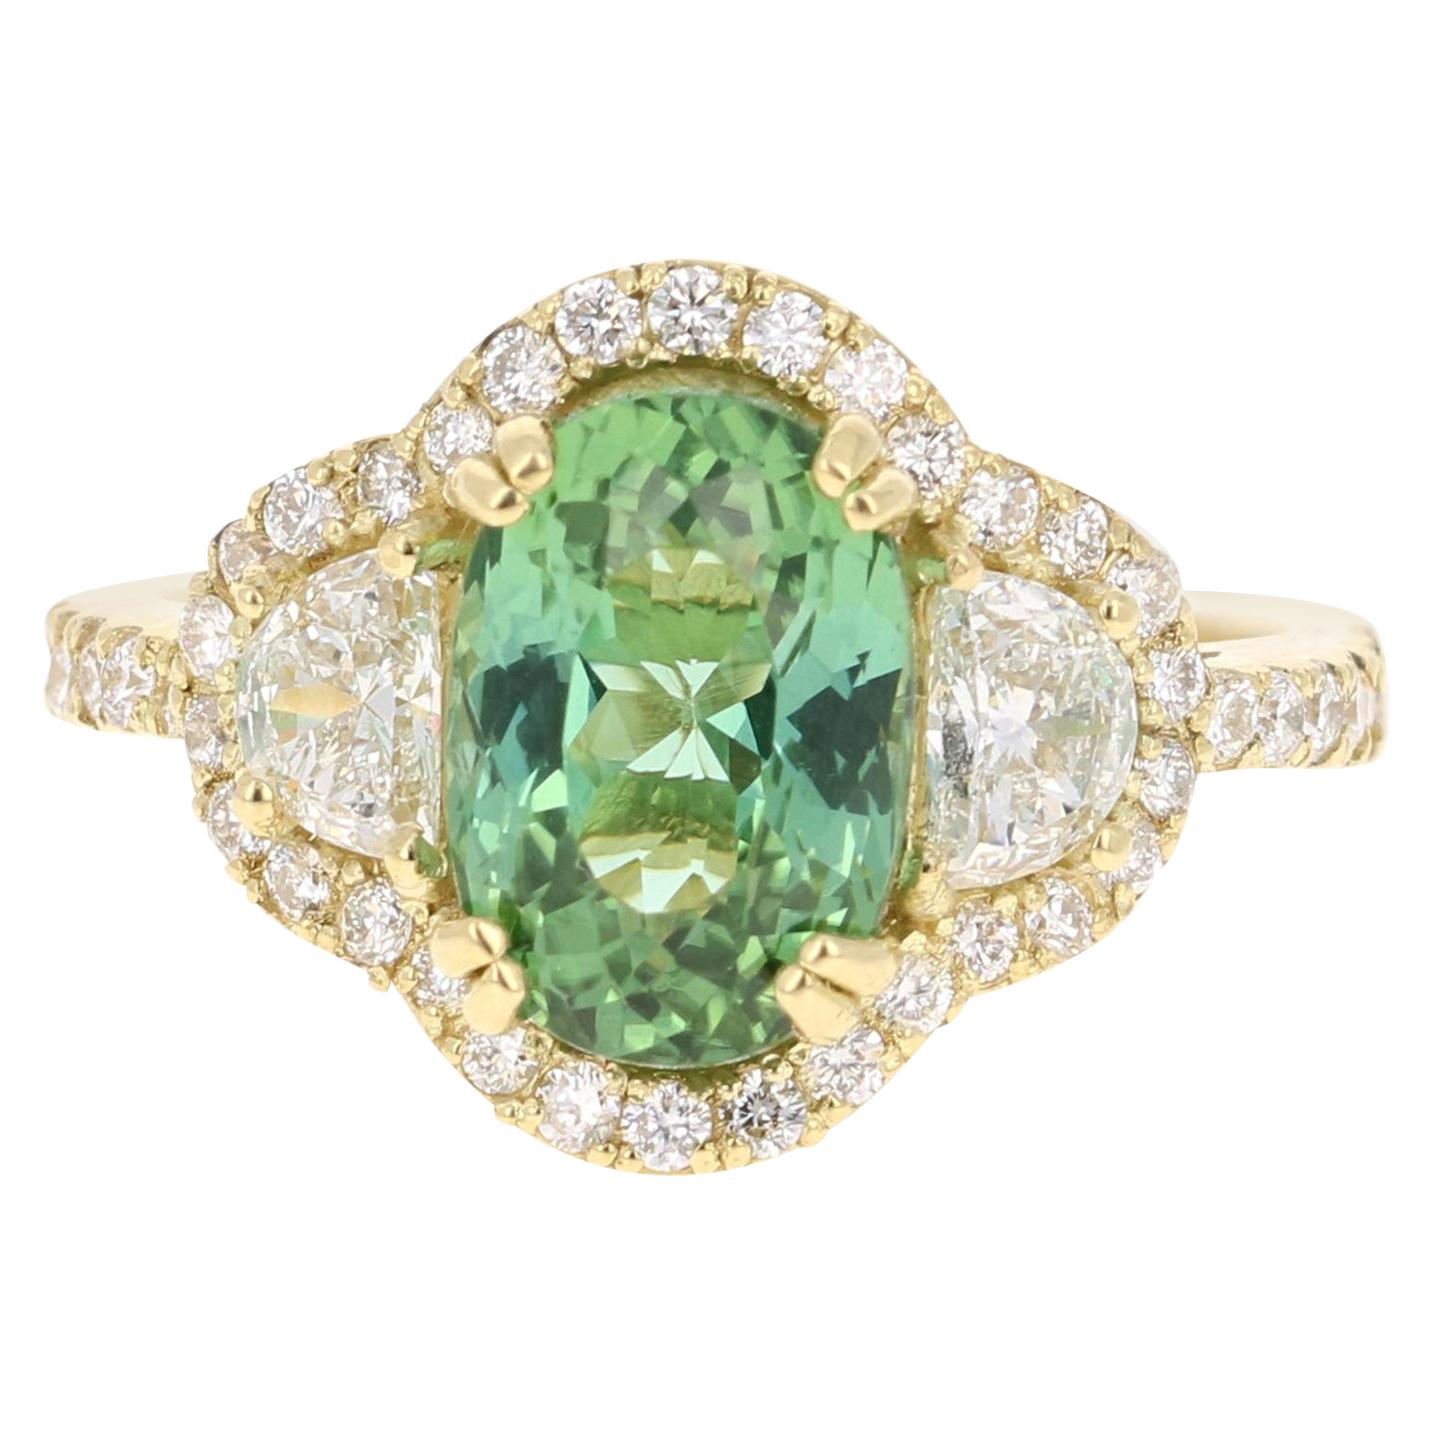 4.02 Carat Green Tourmaline Diamond 18 Karat Yellow Gold Engagement Ring